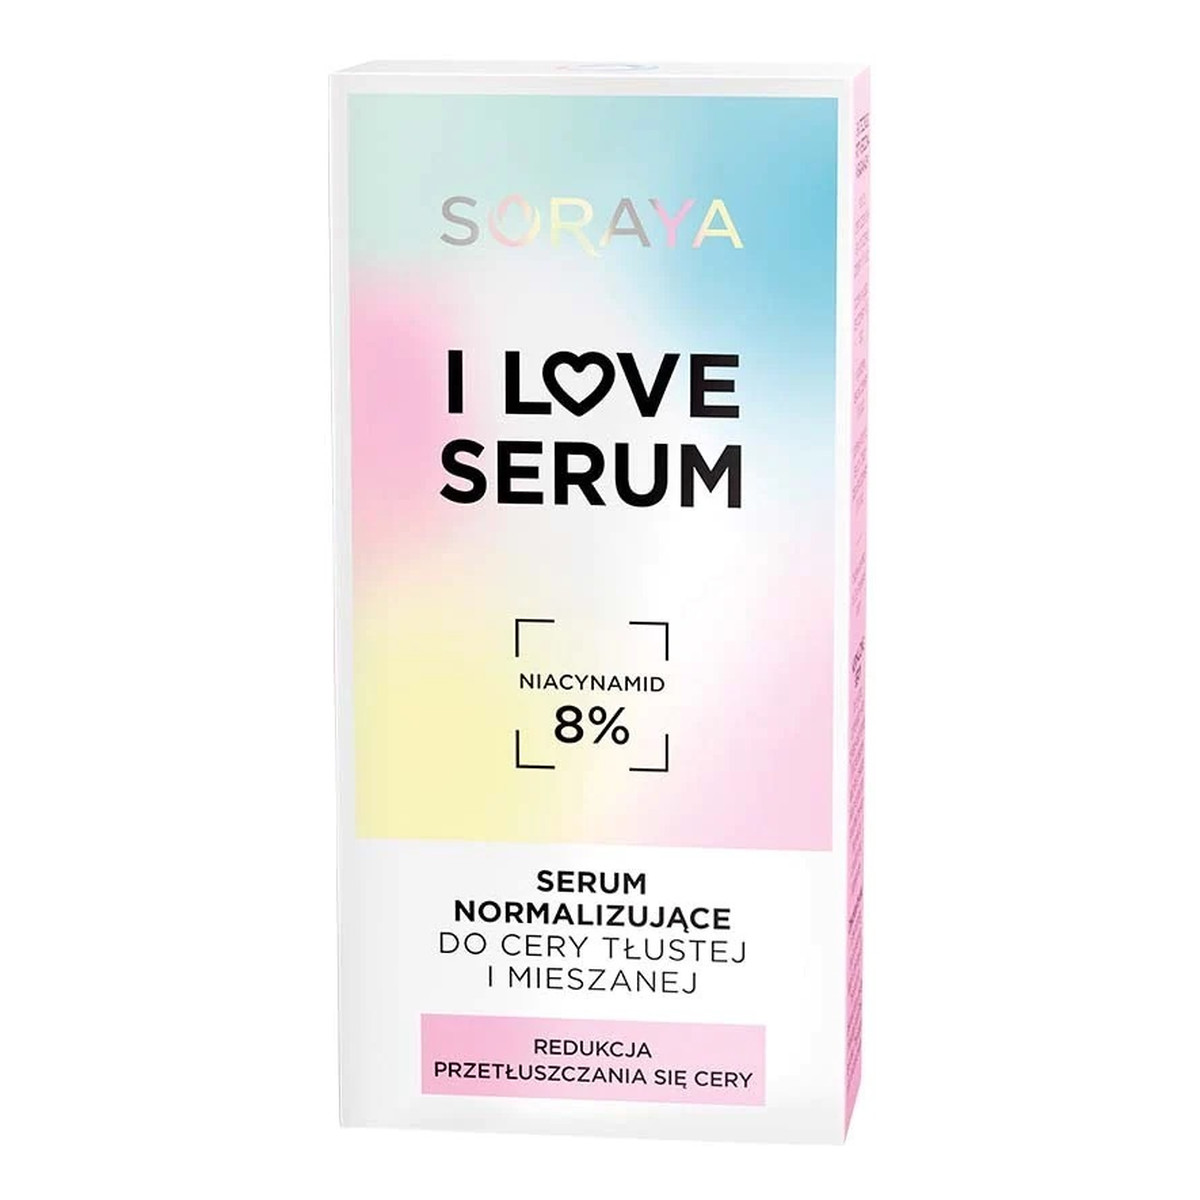 Soraya I Love Serum Serum normalizujące do cery tłustej i mieszanej 30ml